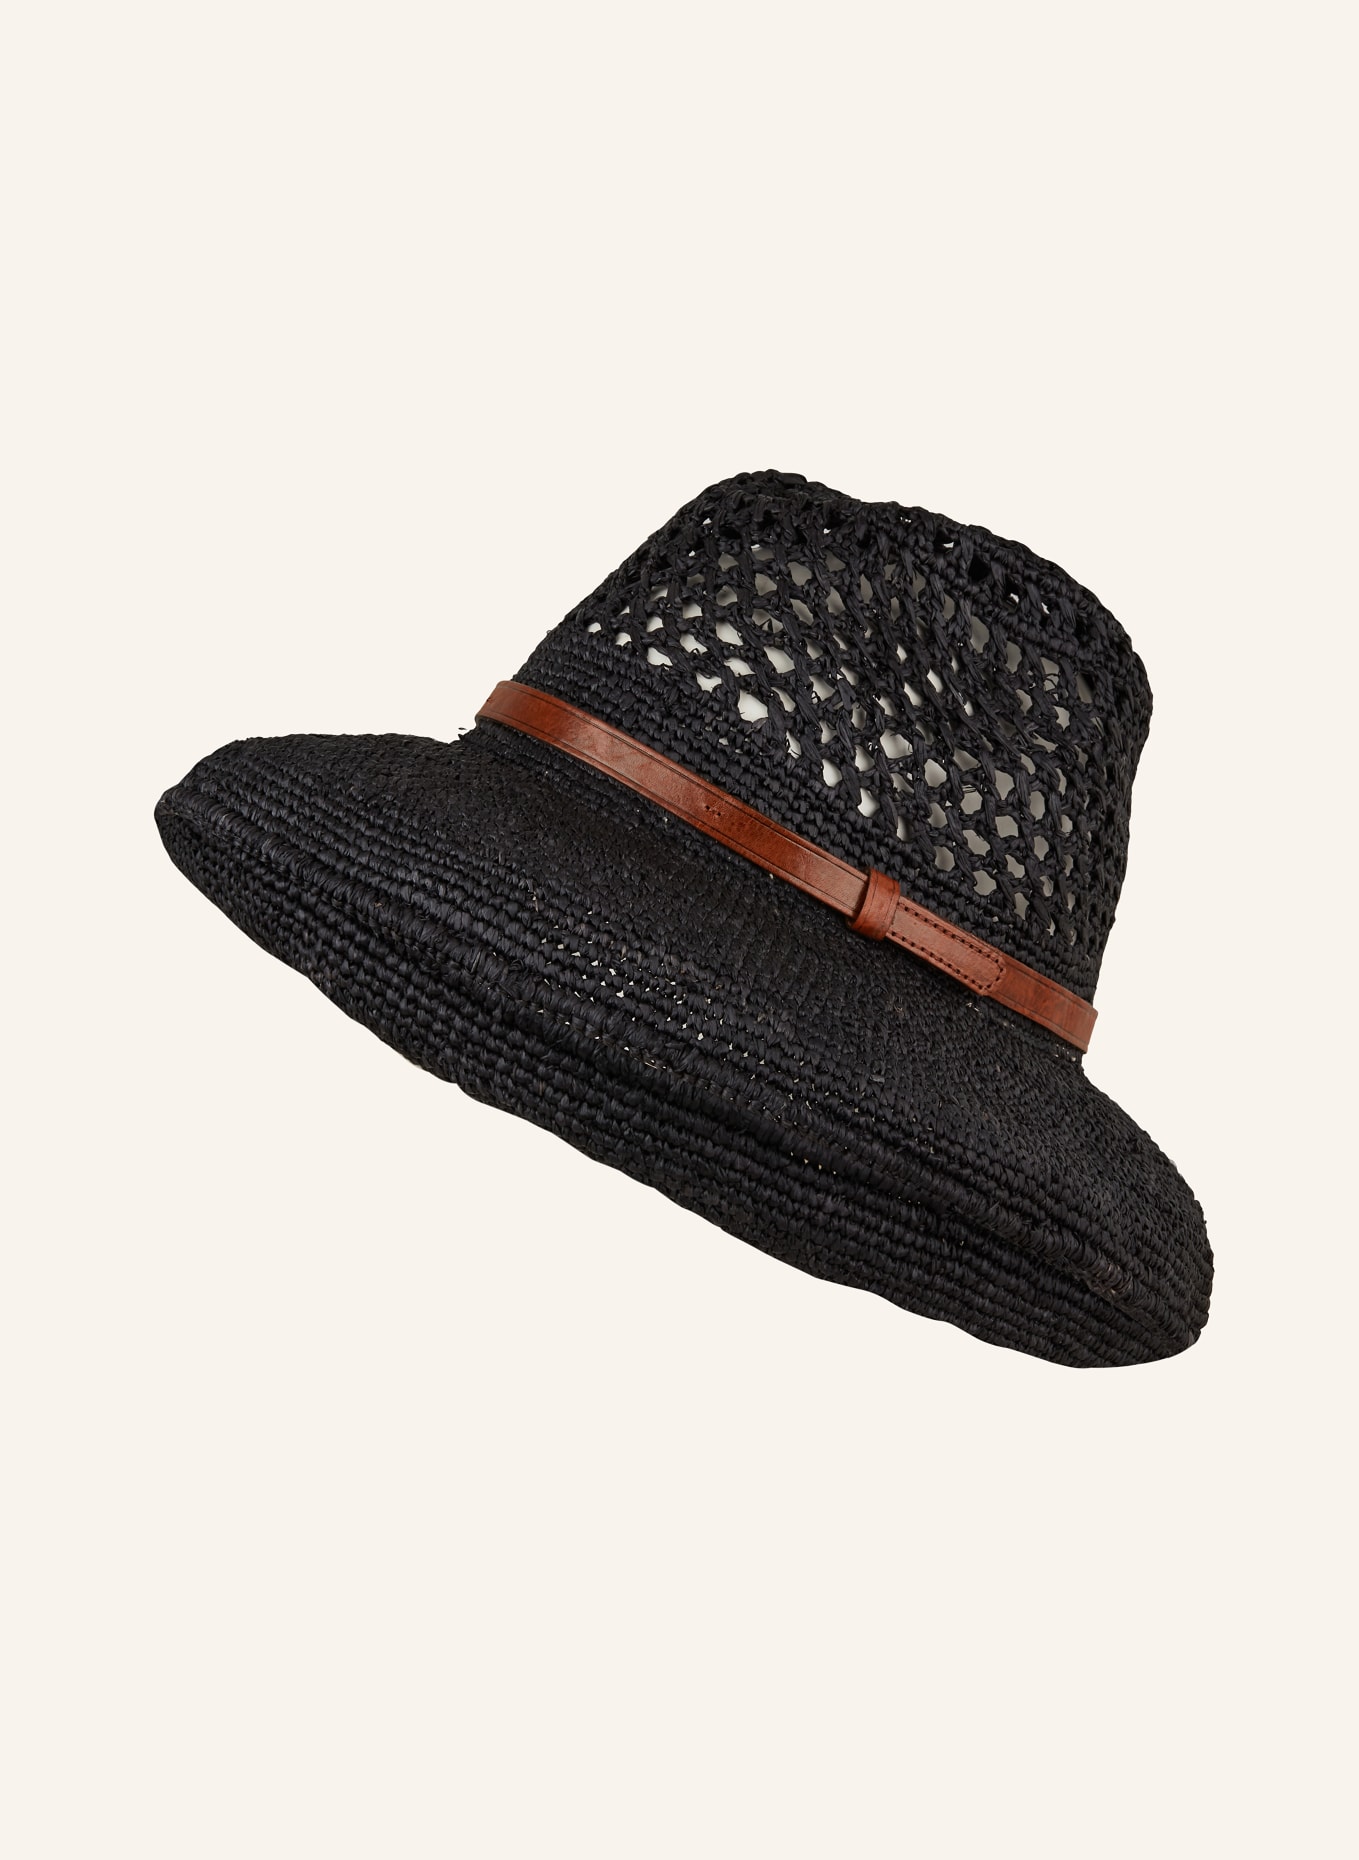 IBELIV Straw hat SOA , Color: BLACK (Image 1)